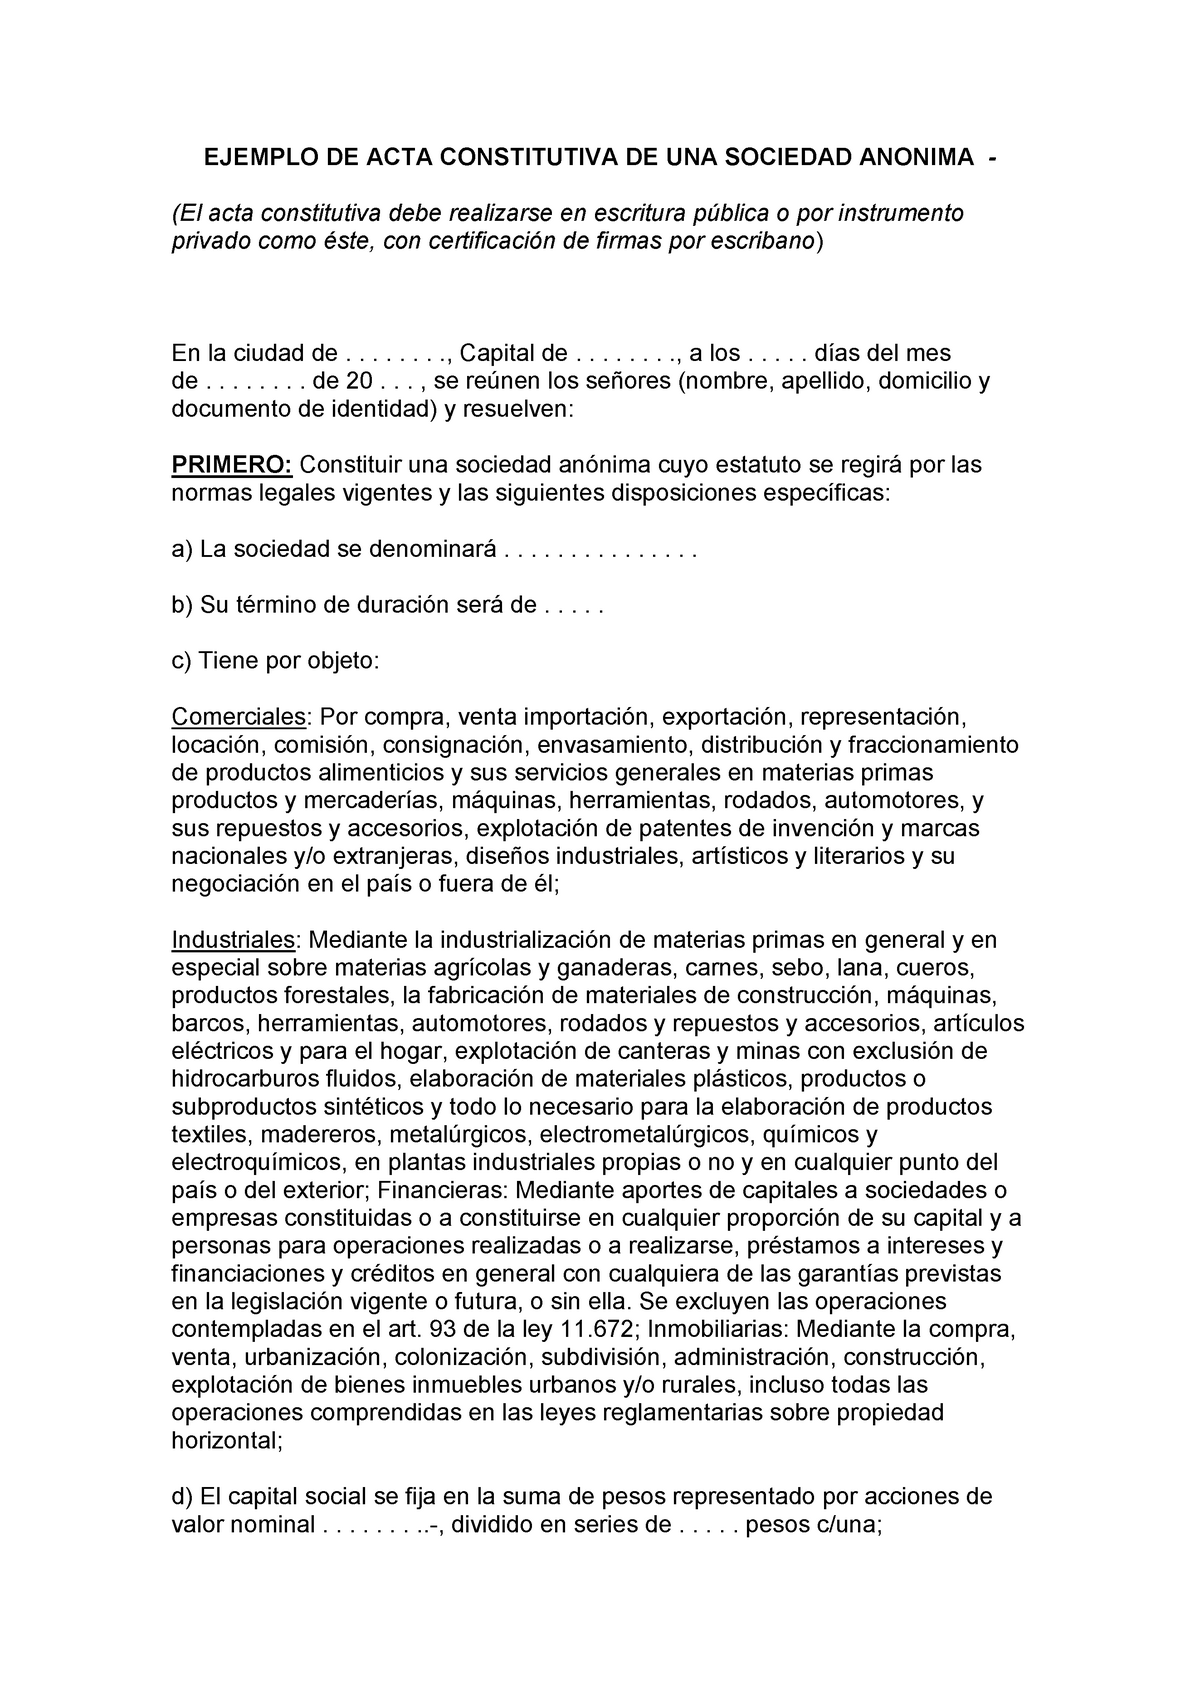 ACTA Constitutiva ( Sociedad Anomima) - EJEMPLO DE ACTA CONSTITUTIVA DE ...